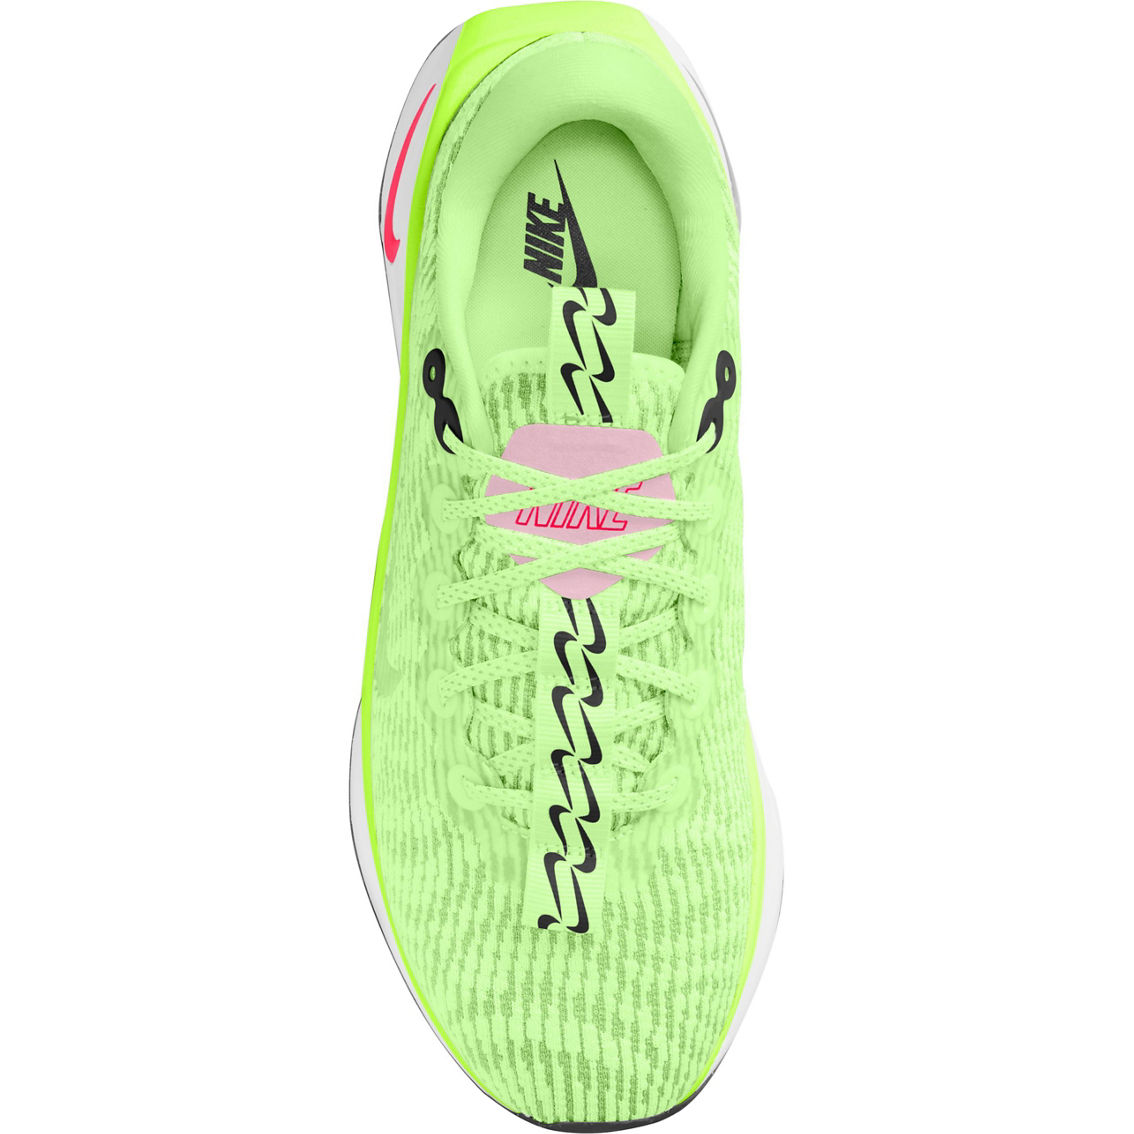 Nike Women's Motiva Athletic Shoes - Image 3 of 4